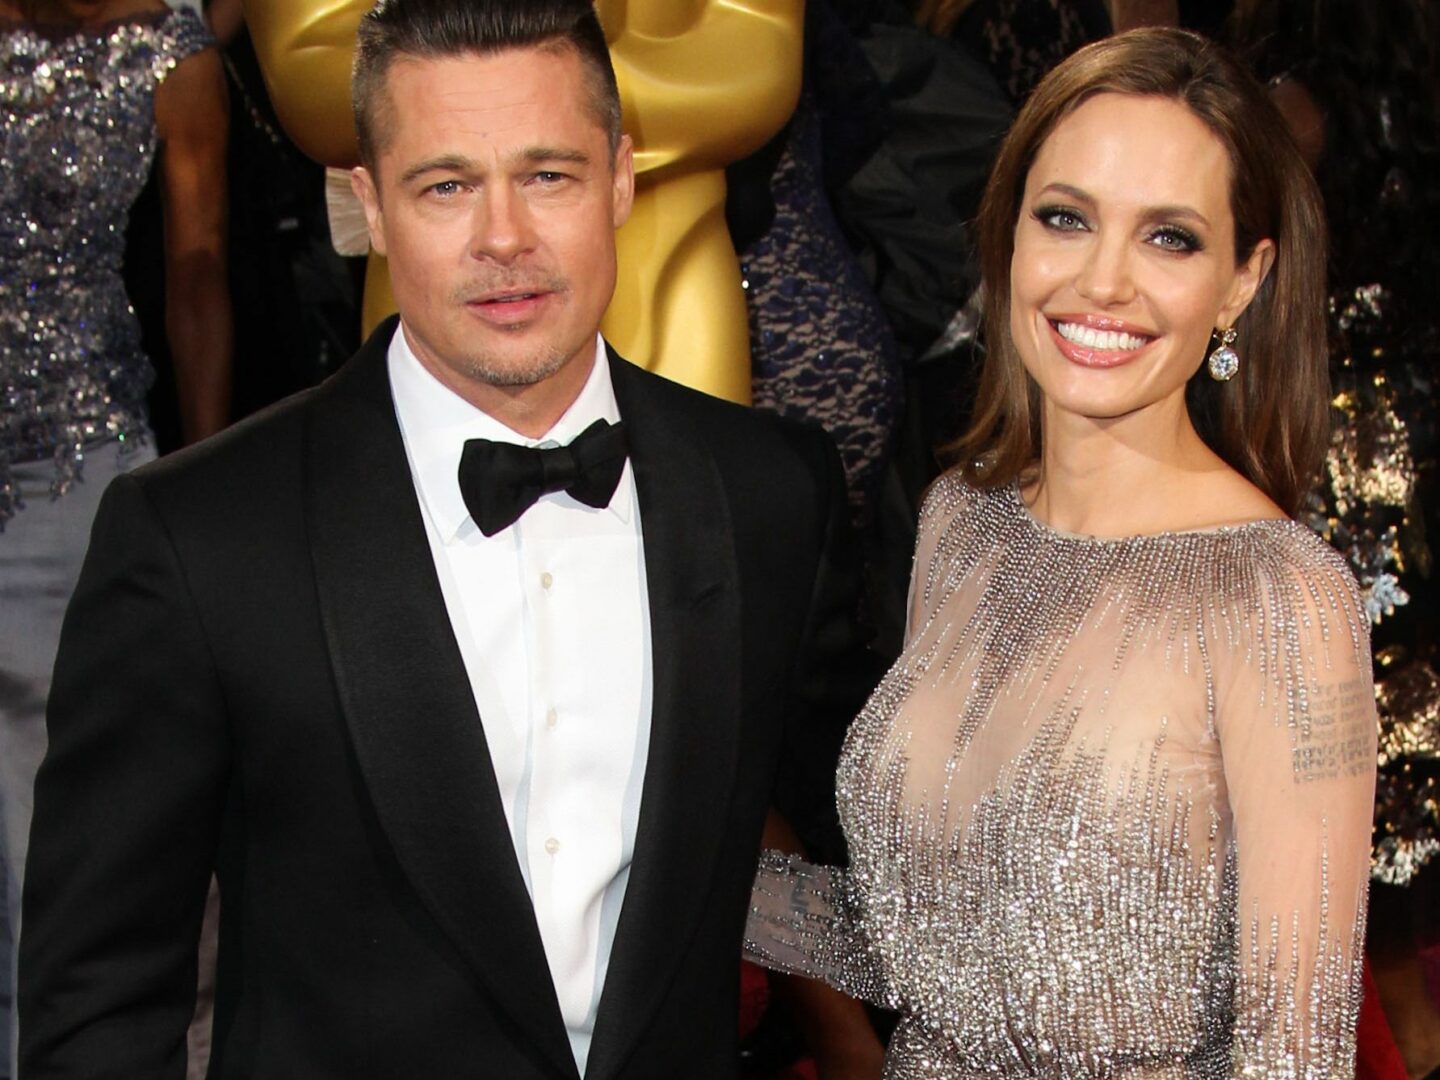  C'est la guerre entre Angelina Jolie et Brad Pitt @BestImage